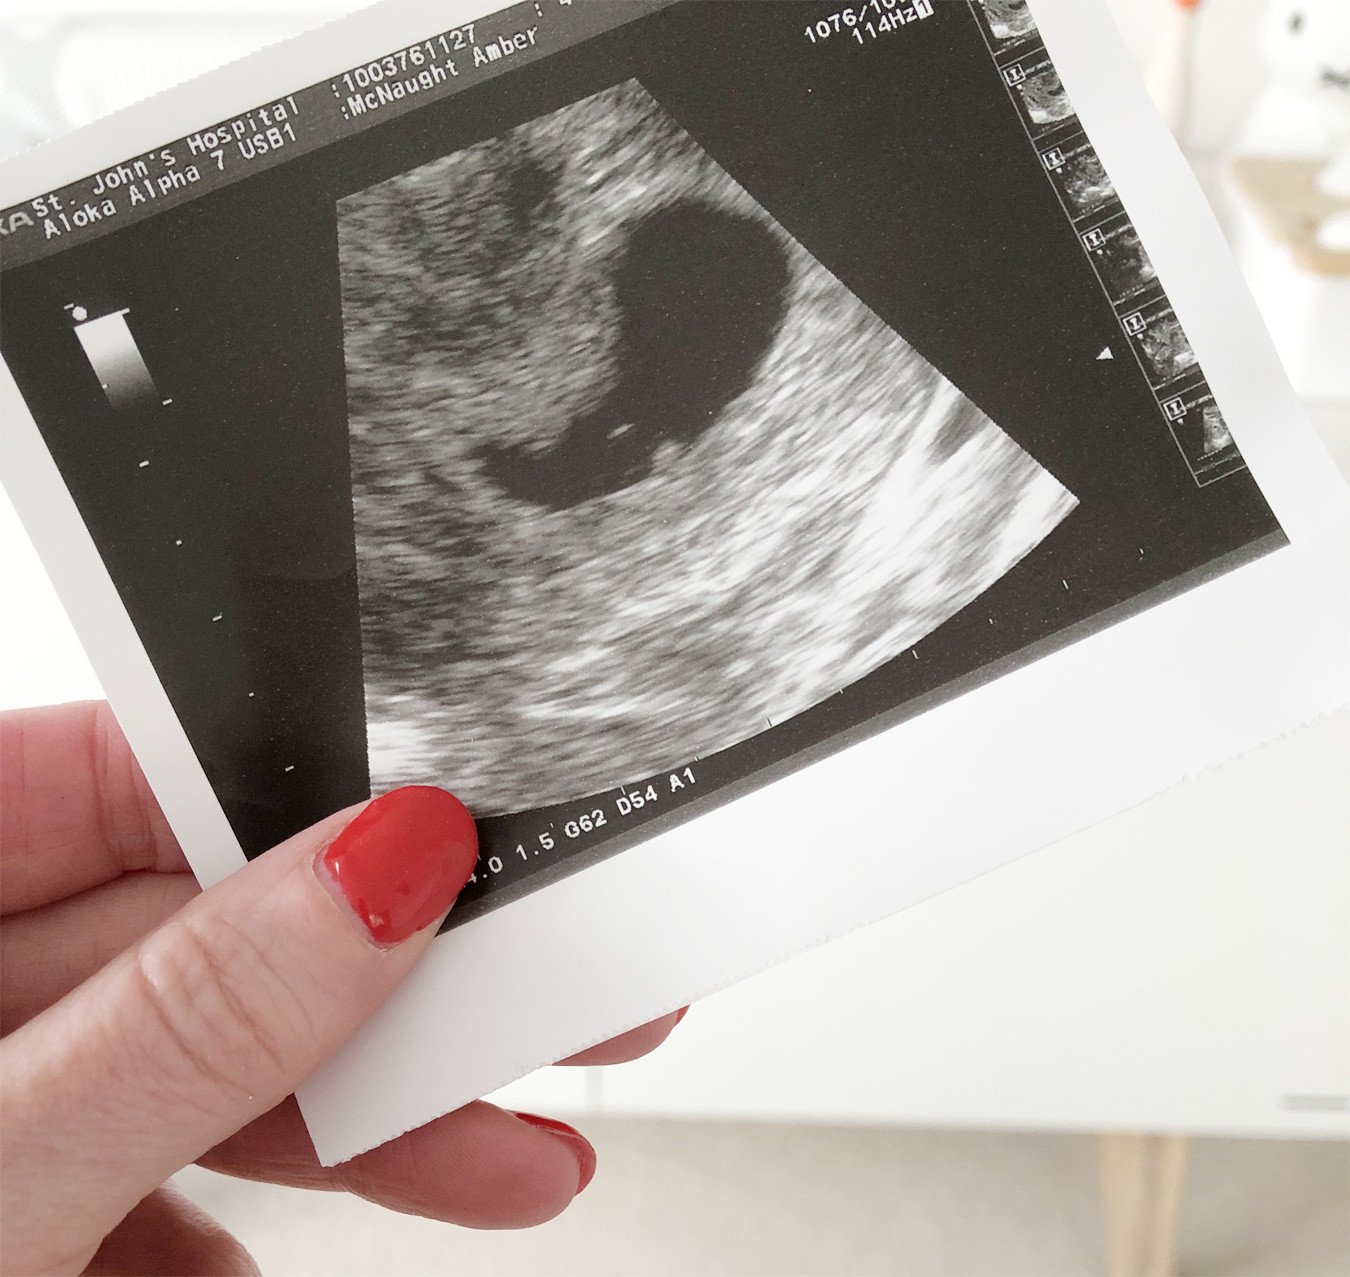 1st ultrasound scan